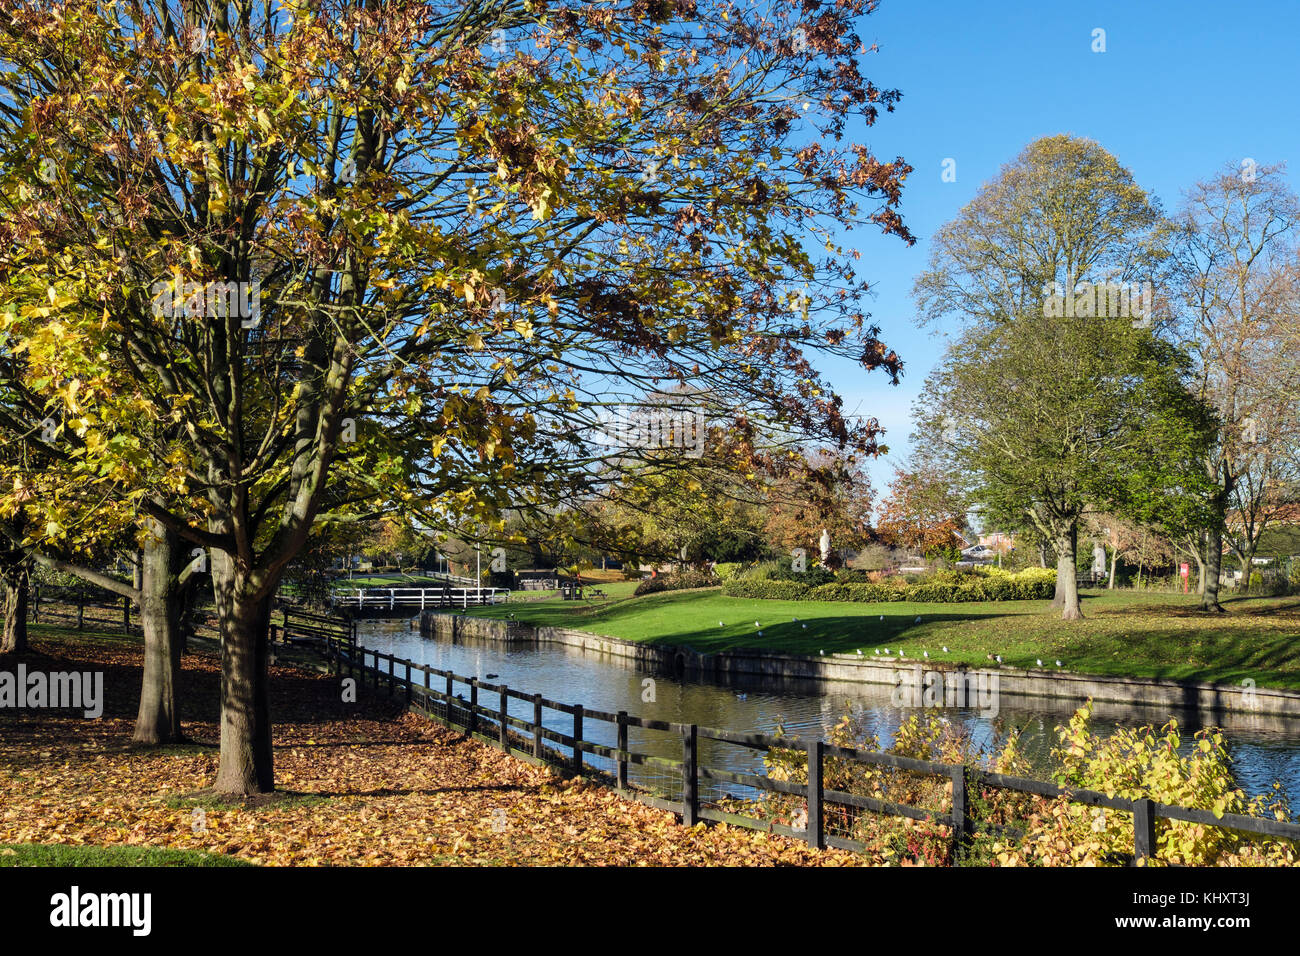 Le canal de Droitwich en vignes parc avec des arbres de l'automne. Droitwich Spa, Worcestershire, Angleterre, Royaume-Uni, Angleterre Banque D'Images